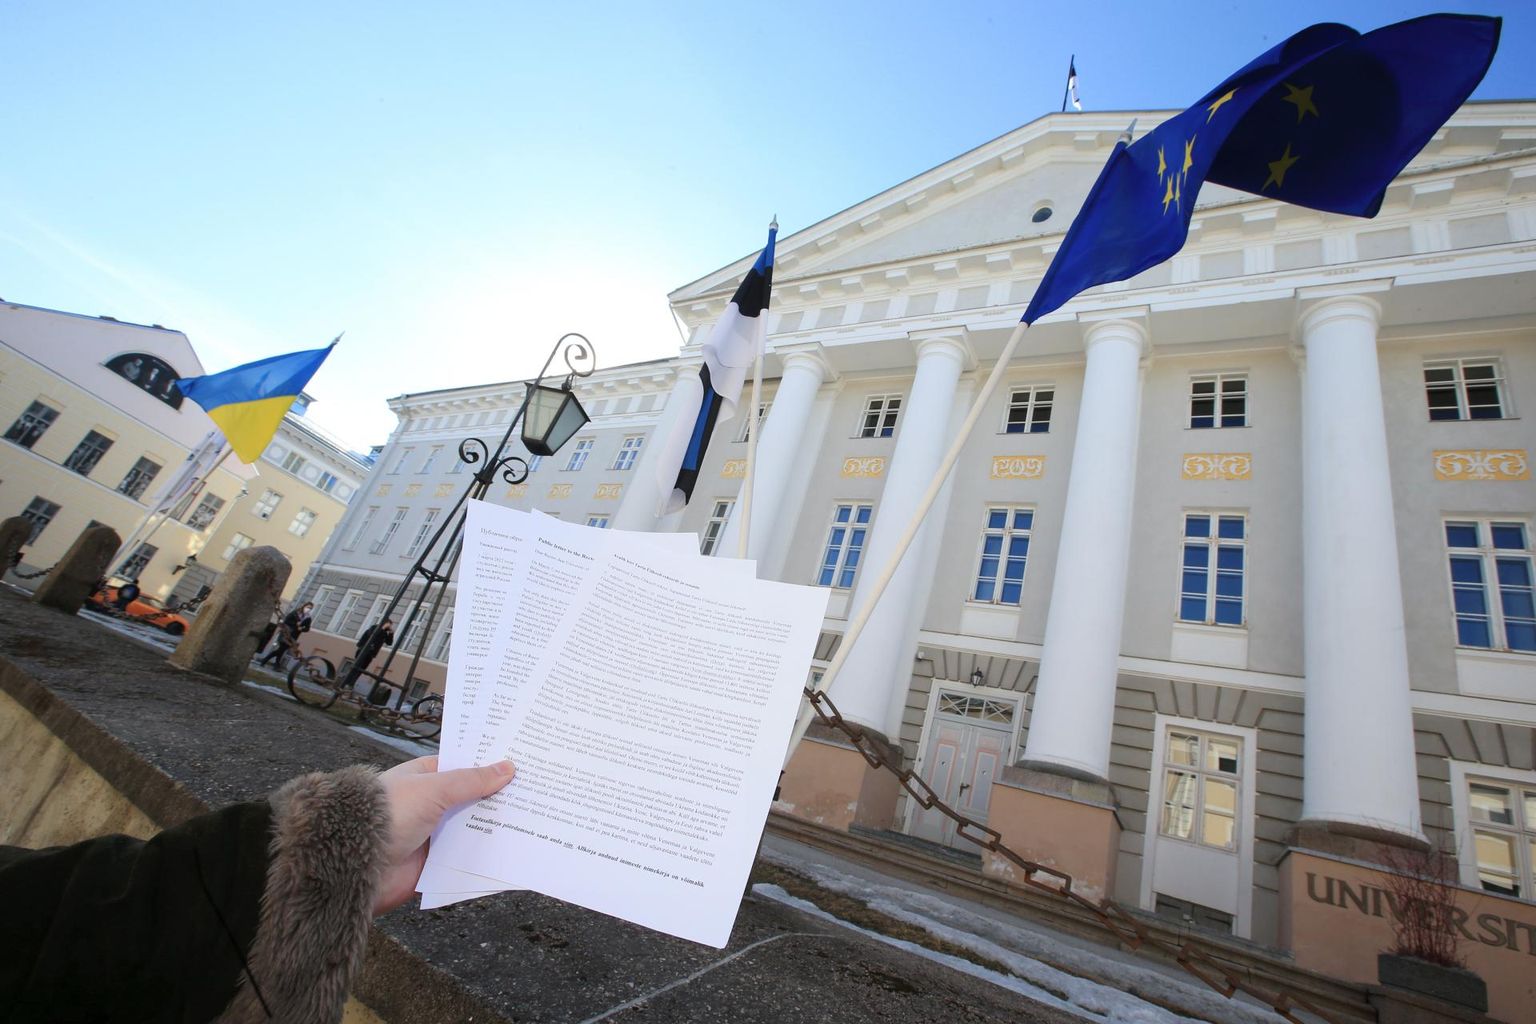 Venemaa ja Valgevene tudengite Tartu ülikooli kandideerimise õigust toetavale kirjale on kogunenud hulgaliselt allkirju, kuid senatisse pole see veel jõudnud.